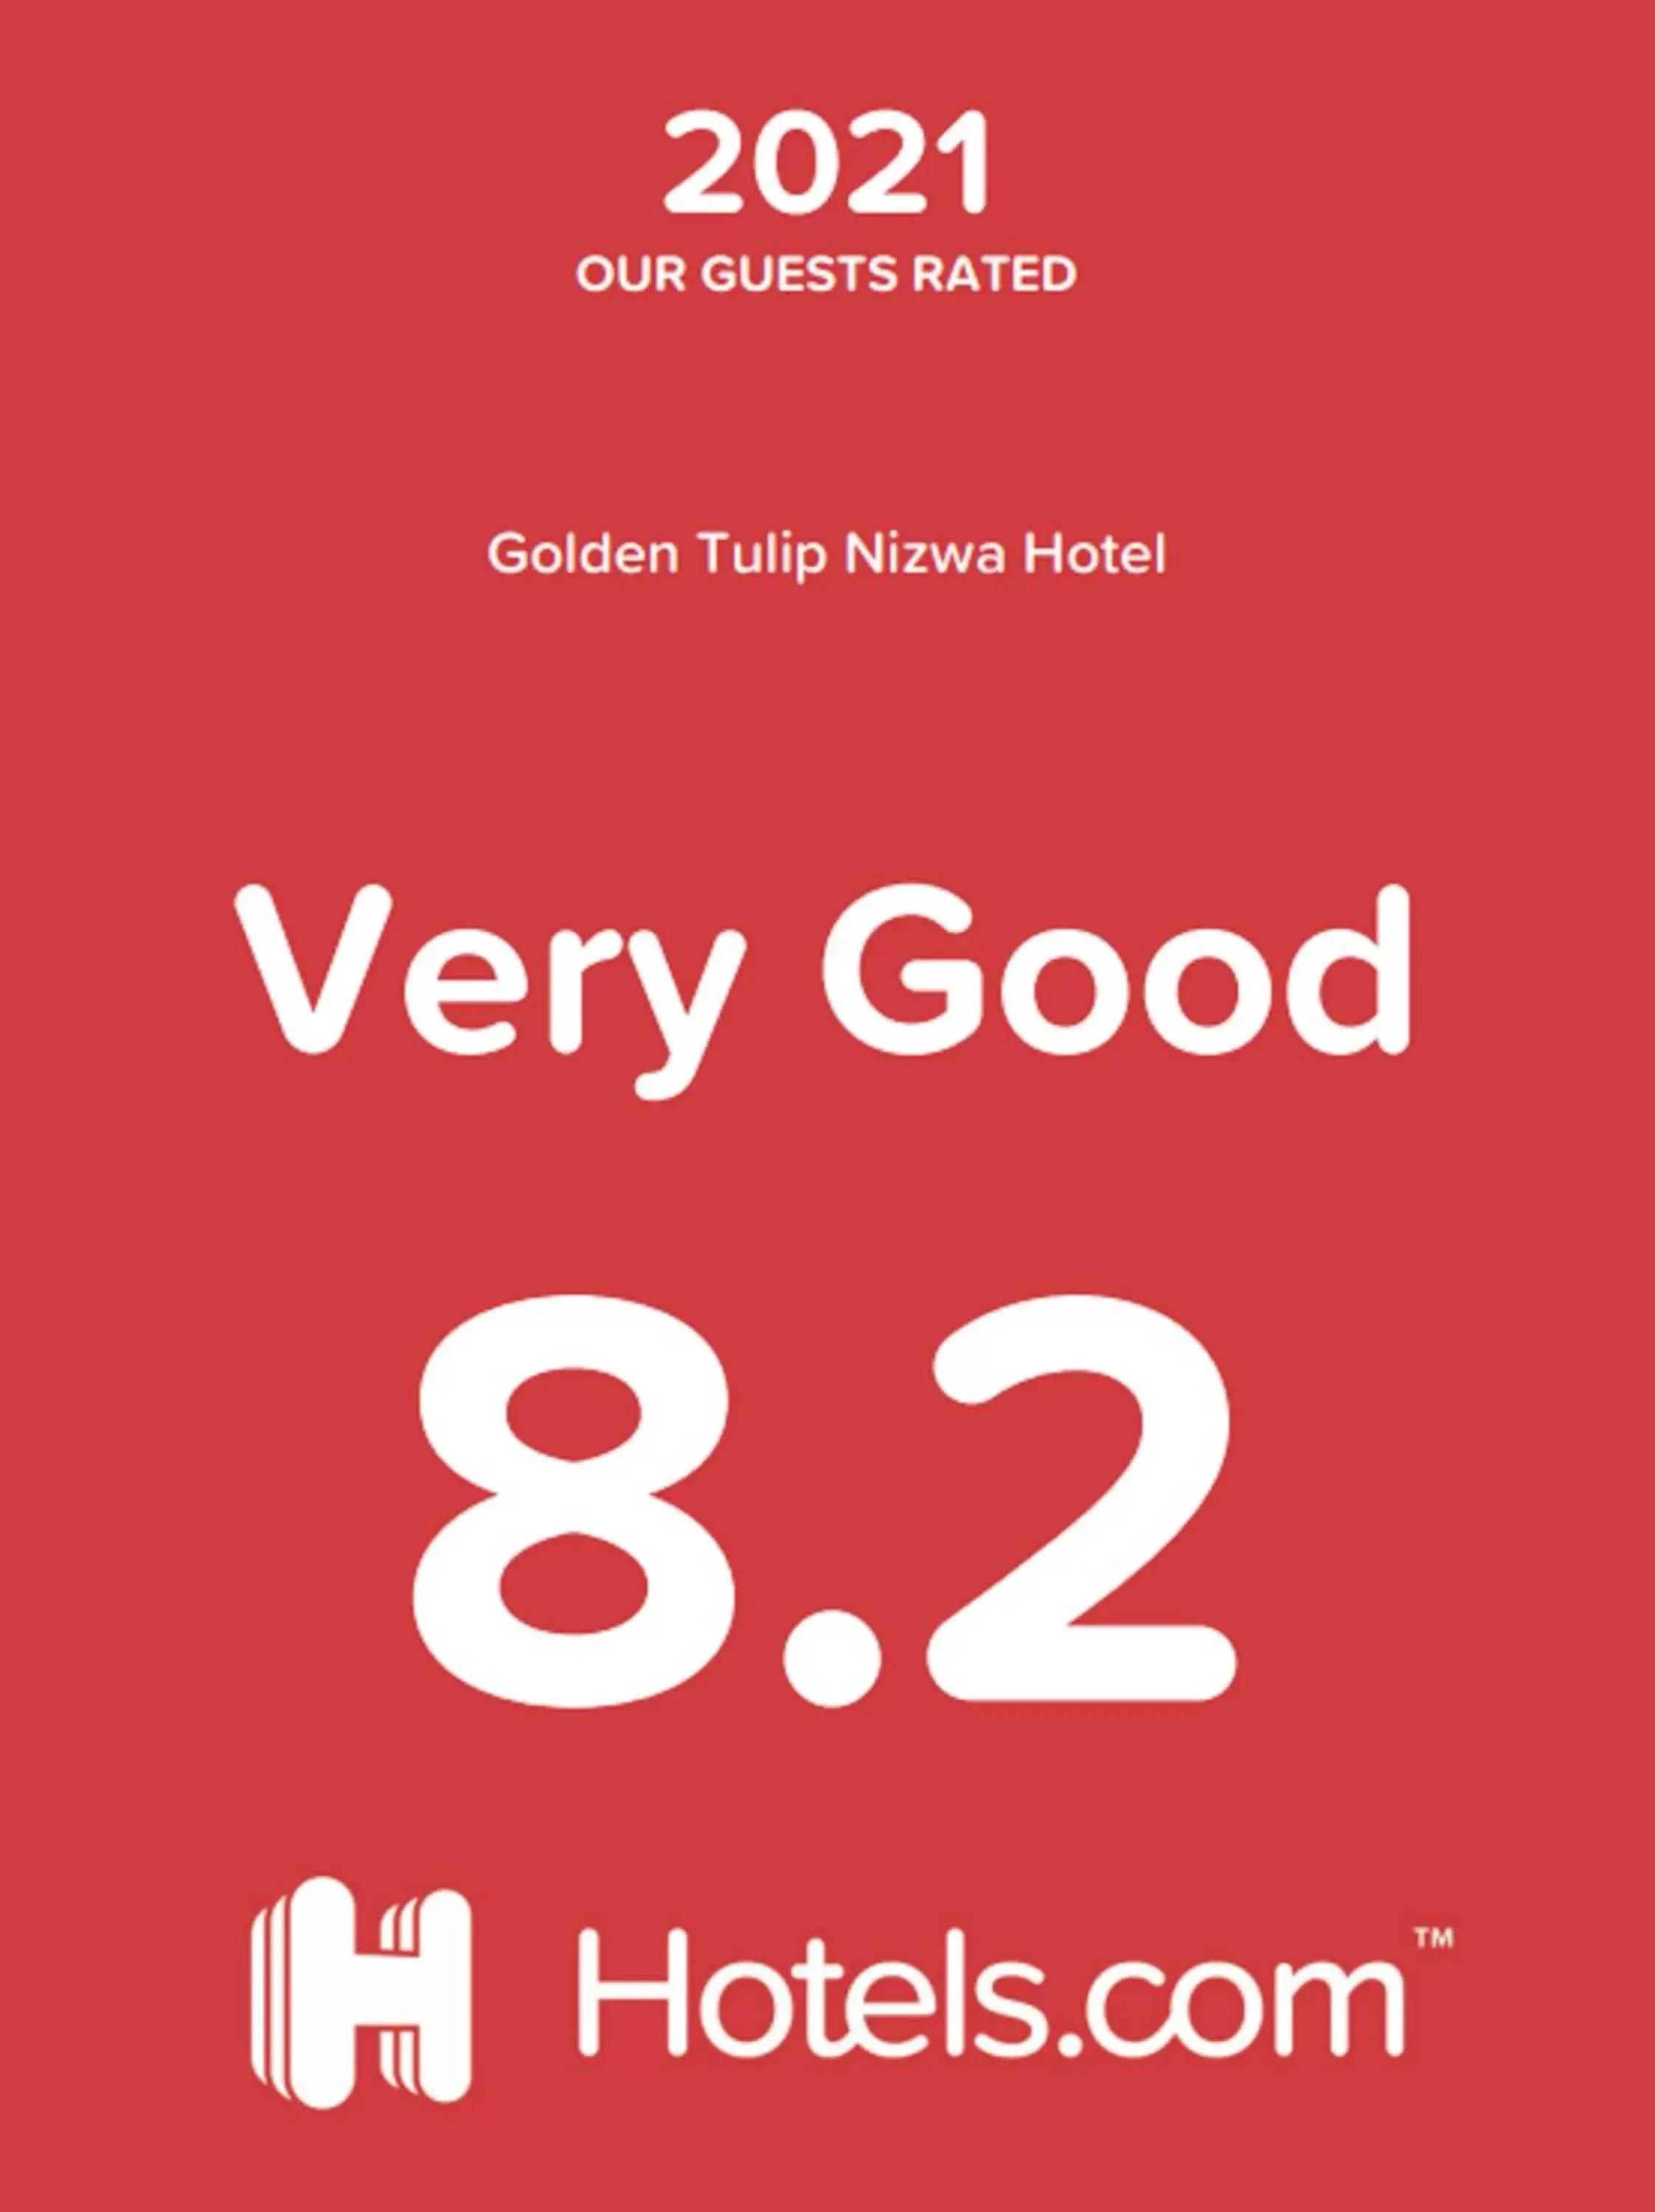 Certificate/Award in Golden Tulip Nizwa Hotel